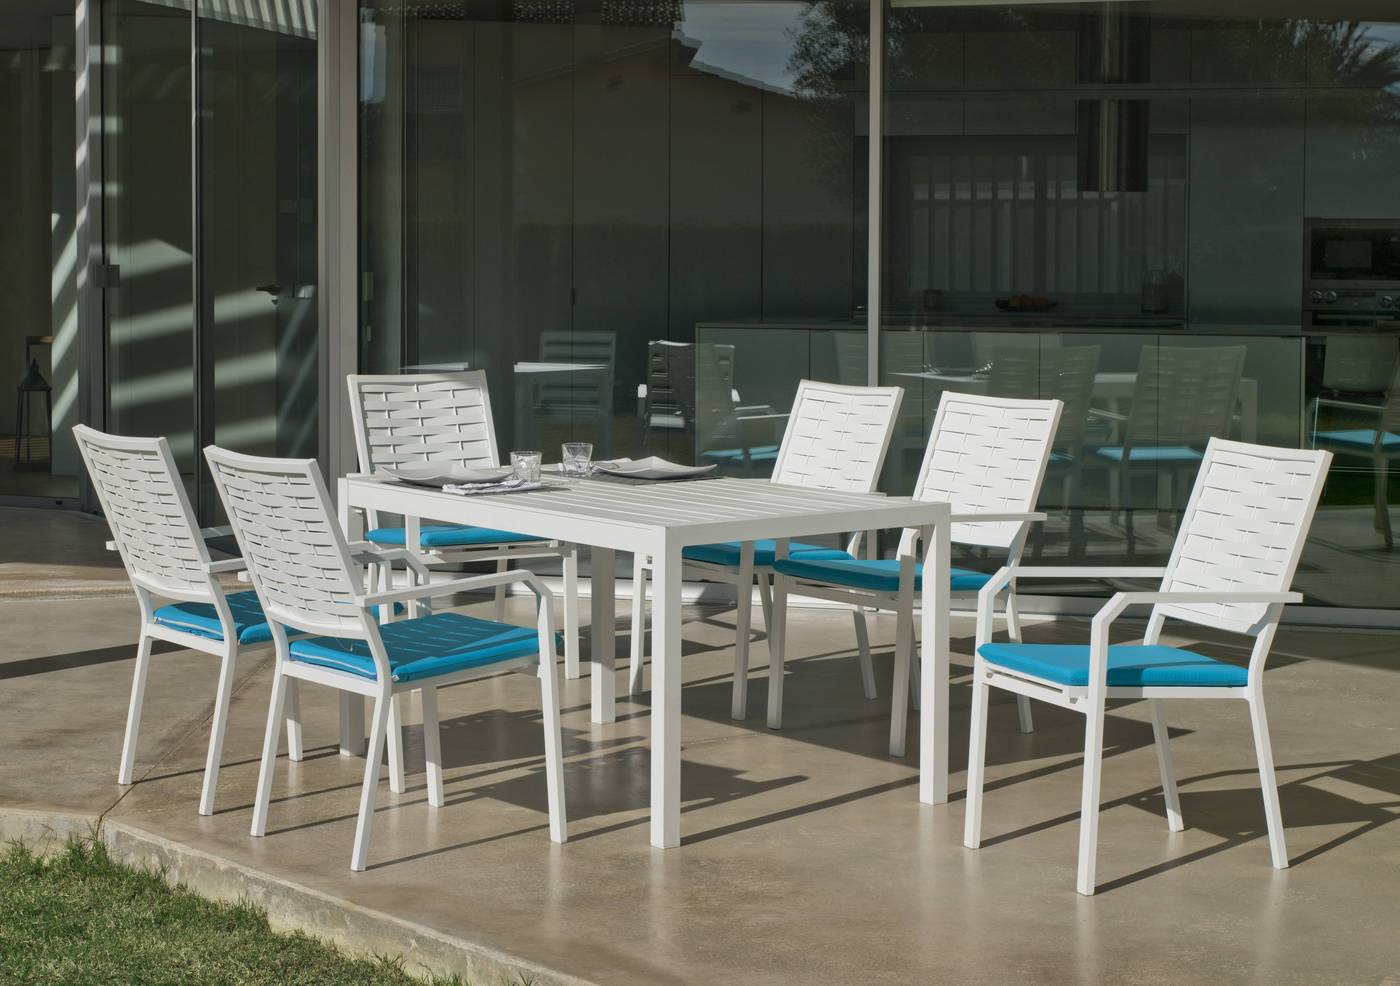 Conjunto de aluminio luxe para jardín o terraza: Mesa rectangular 150 cm. + 6 sillones. Disponible en color blanco, plata, bronce, antracita y champagne.